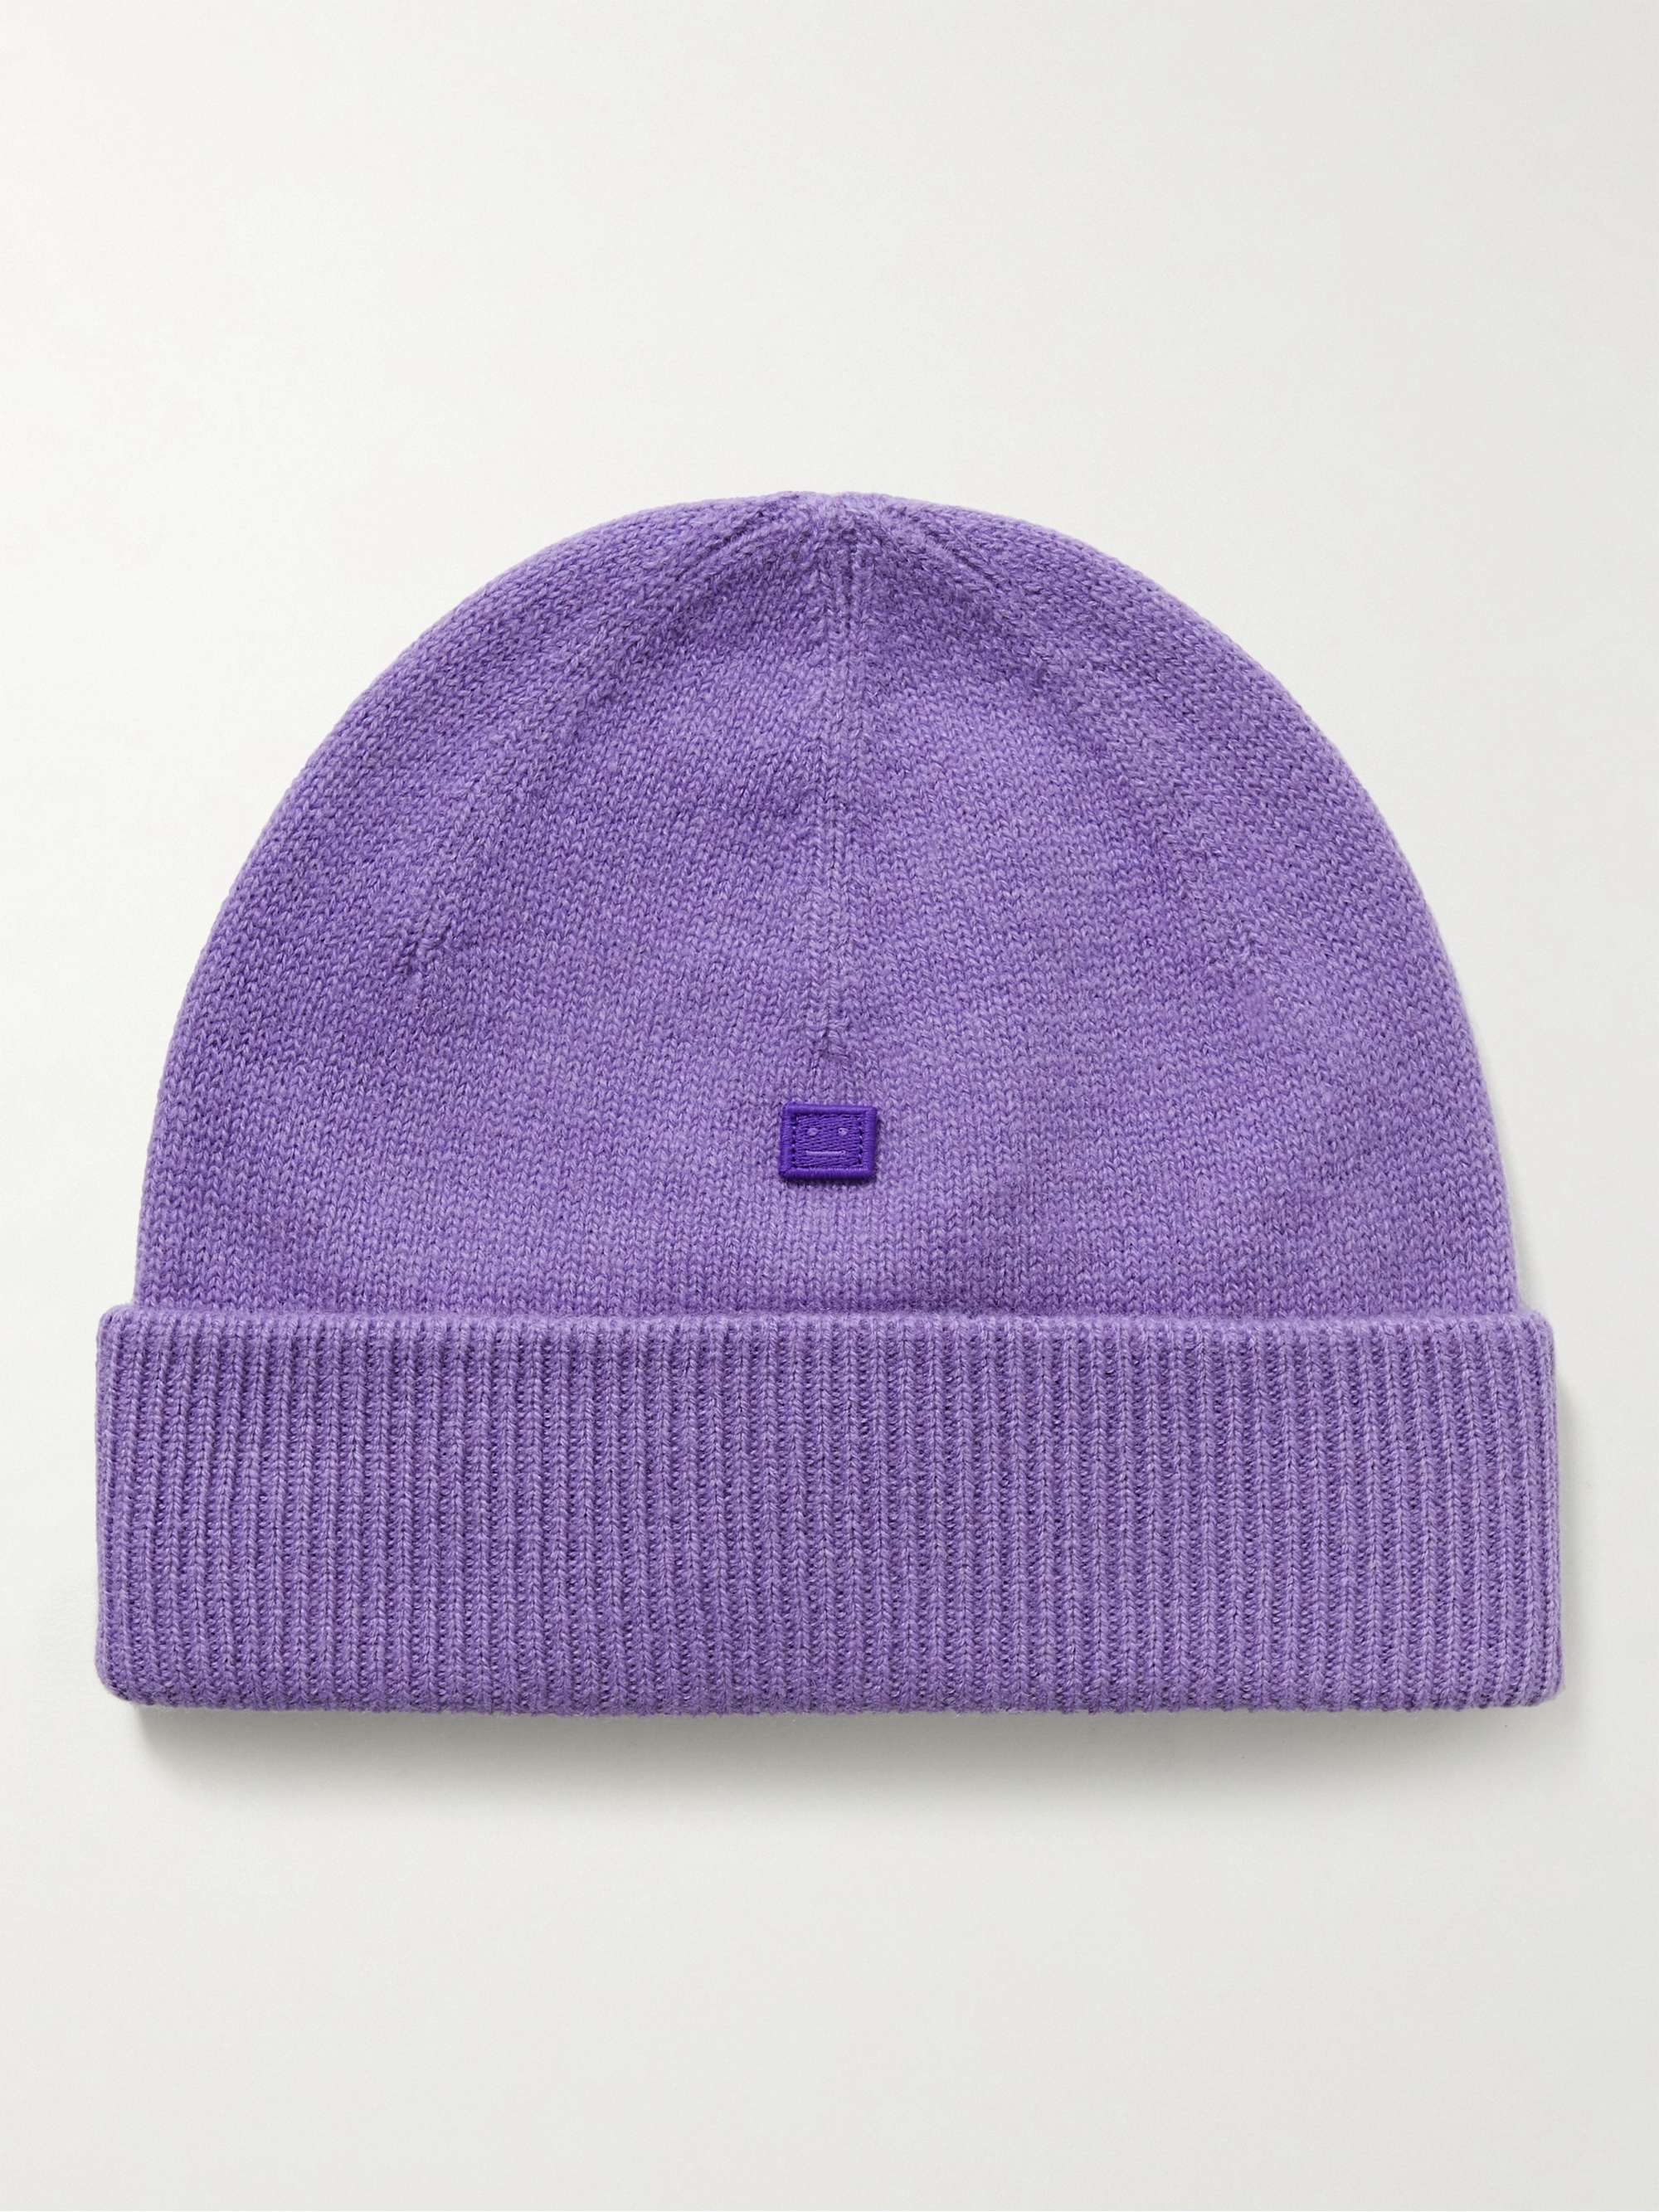 Шерстяная шапка с логотипом ACNE STUDIOS, фиолетовый шерстяная шапка kana face acne studios фиолетовый